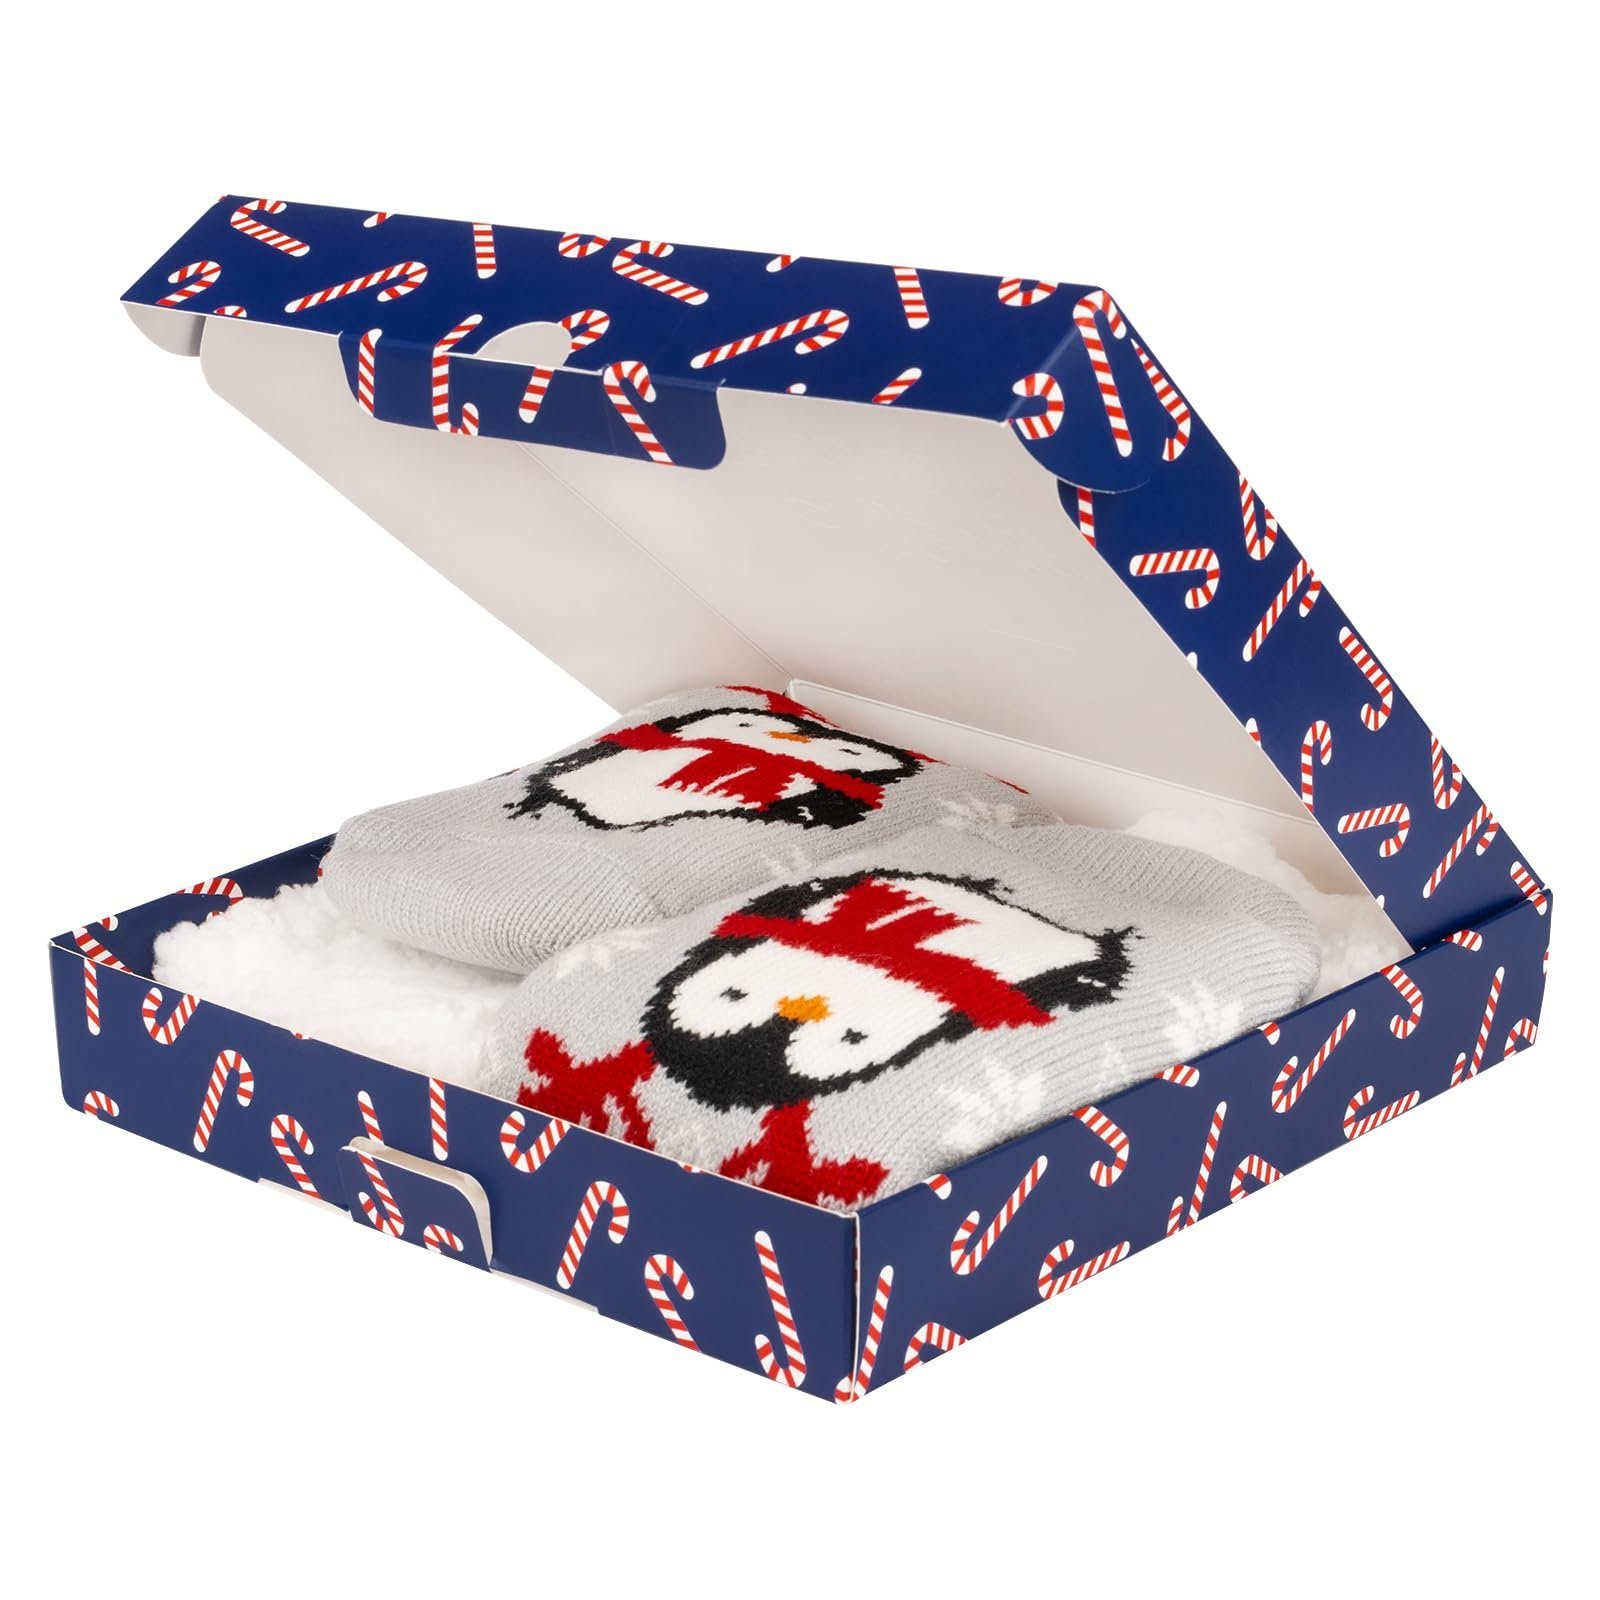 (1 Geschenke Socken Frauen Kuschelsocken Lustige Warme Soxo socken Paar) Für Weihnachtssocken Pinguin